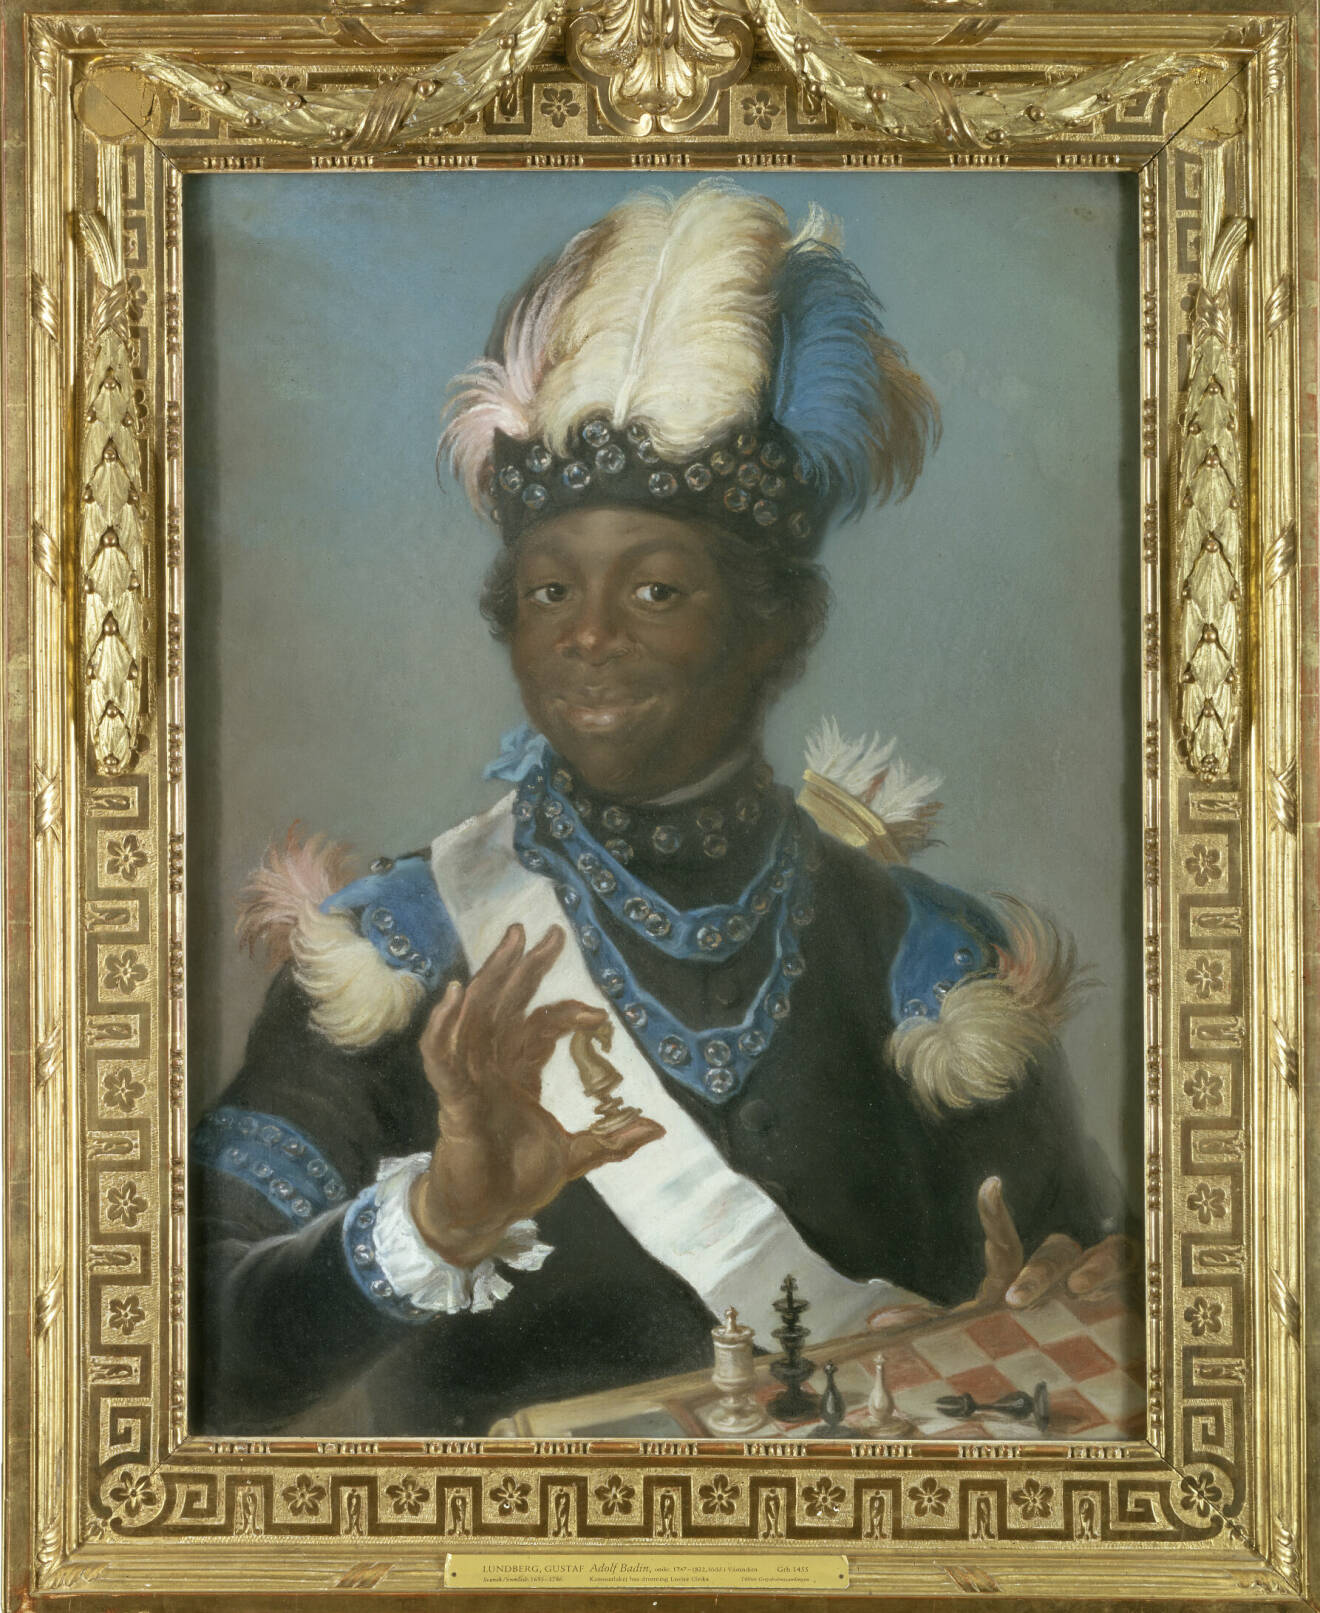 Barnslaven Gustav Badin som kom till Sverige på 1700-talet och blev drottningens fosterson